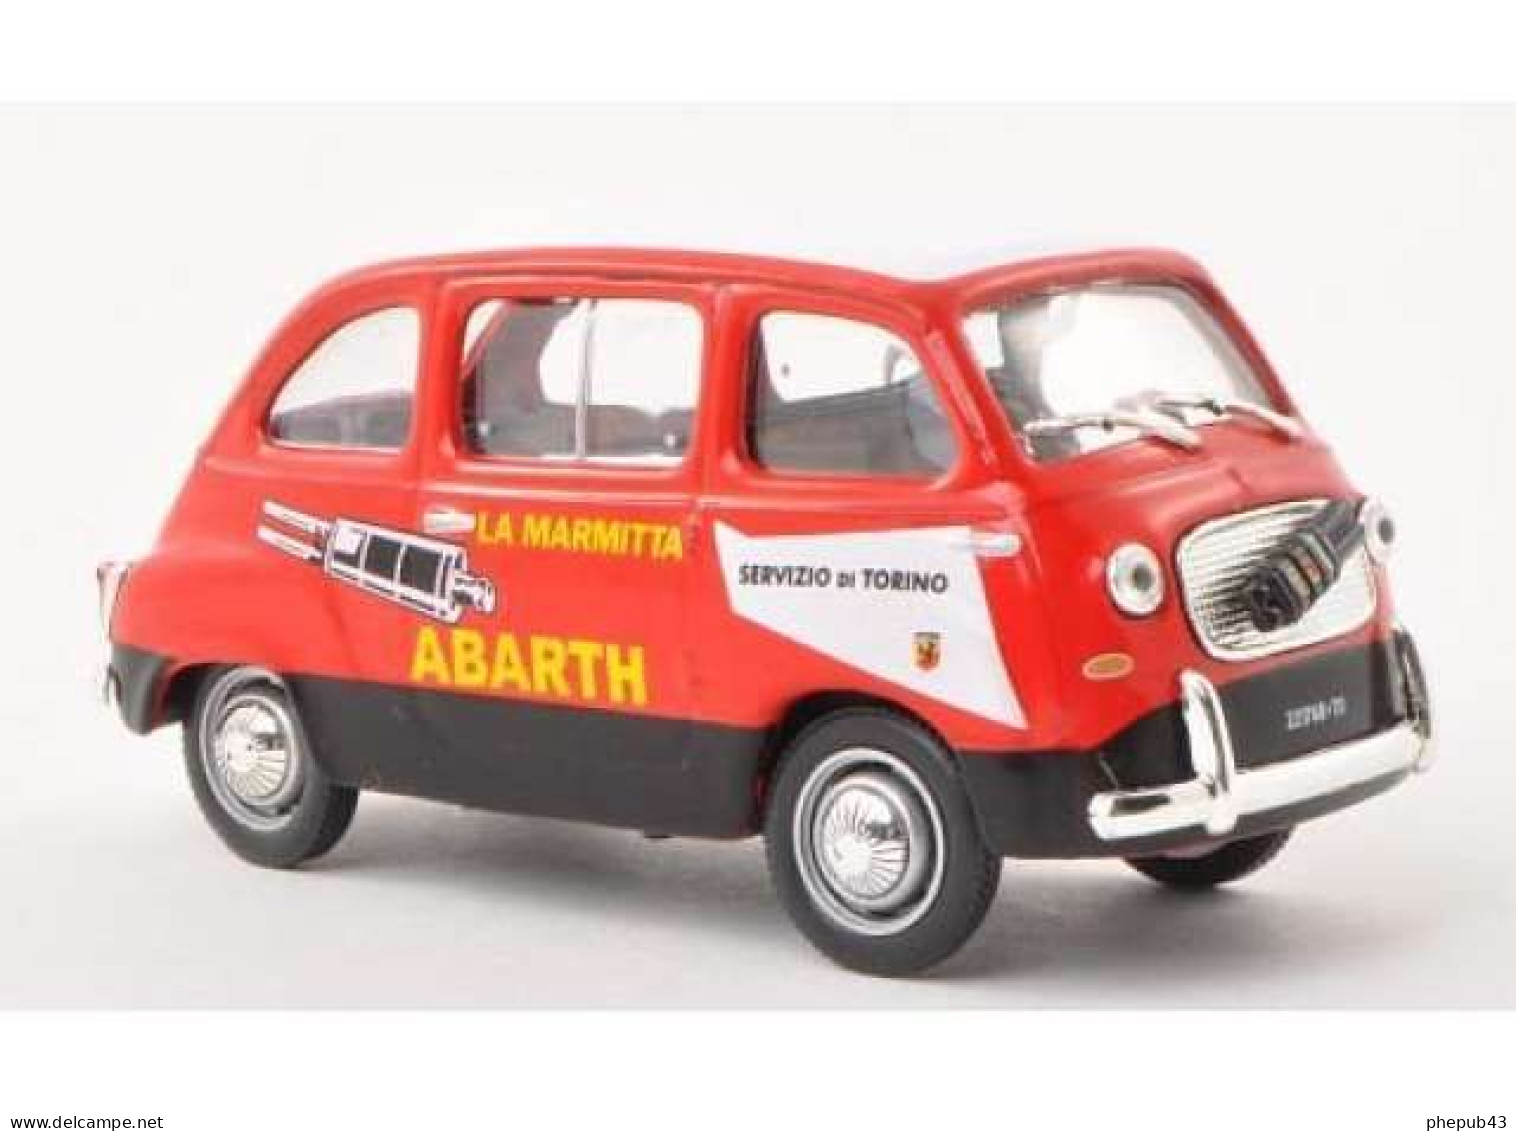 Fiat 750 Multipla Abarth - Servizio Di Torino - 1960 - Red & Black - Altaya - Camions